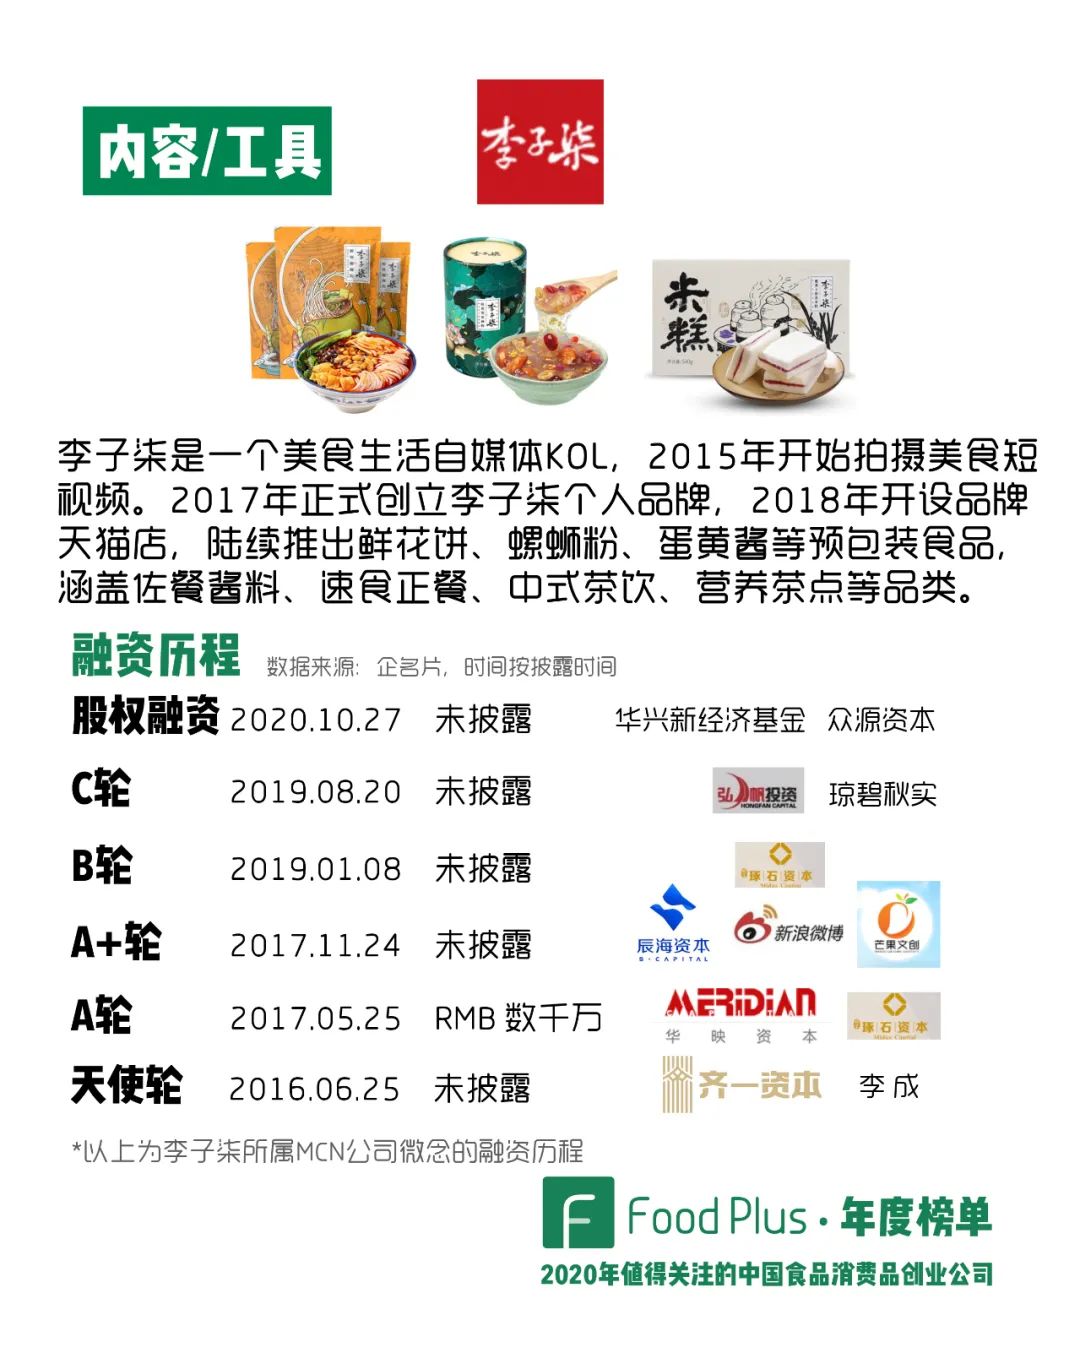 在《2019年值得关注的中国食品消费品创业公司 | FoodPlus·年度榜单》中，我们提到：